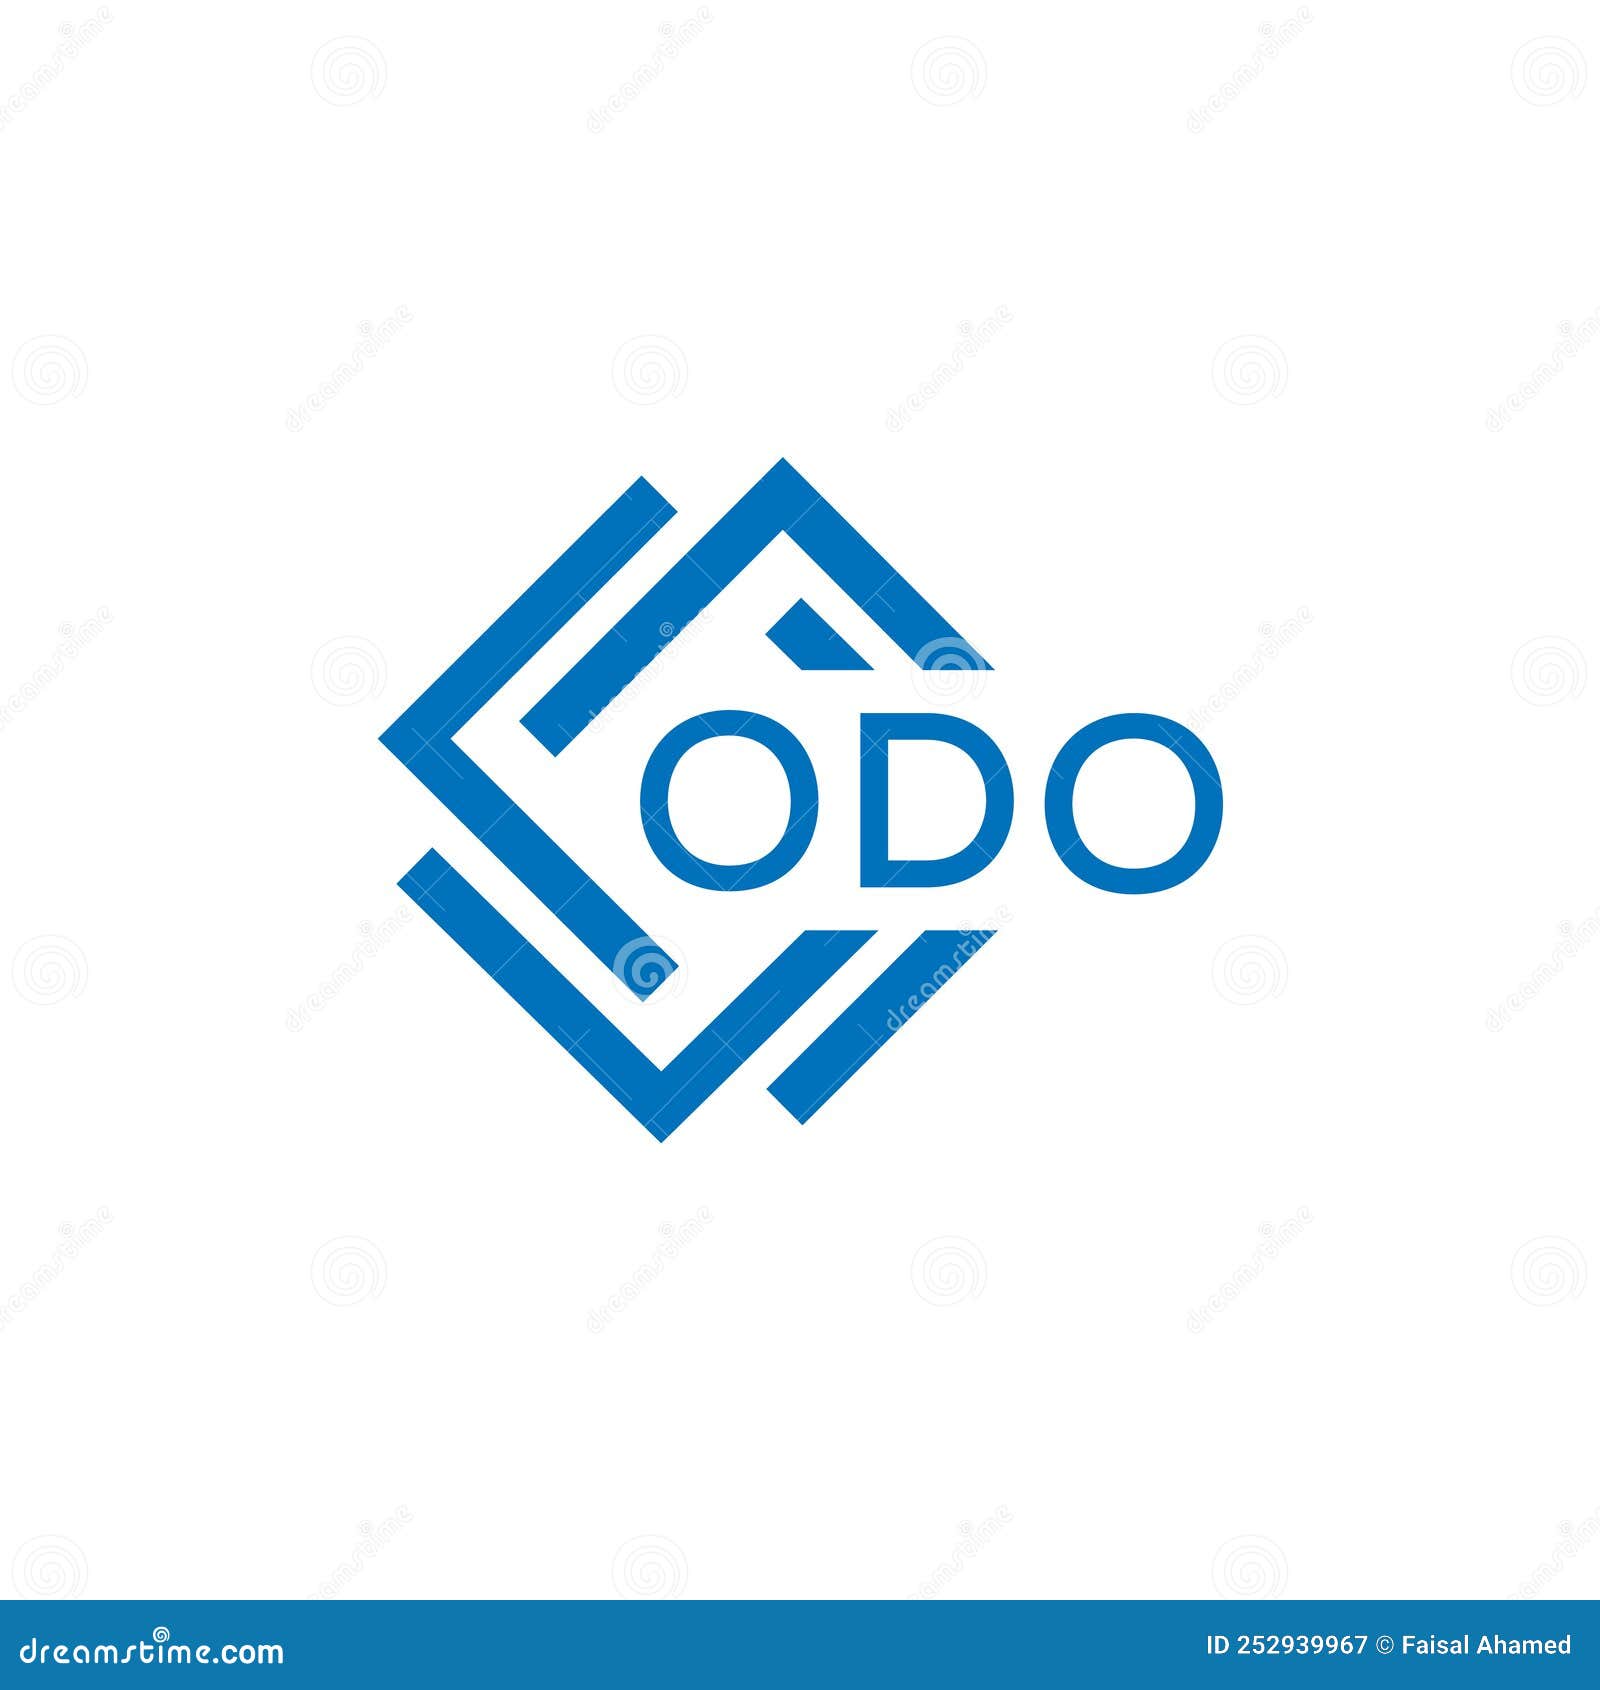 odo letter logo  on white background. odo creative circle letter logo concept. odo letter .odo letter logo  on